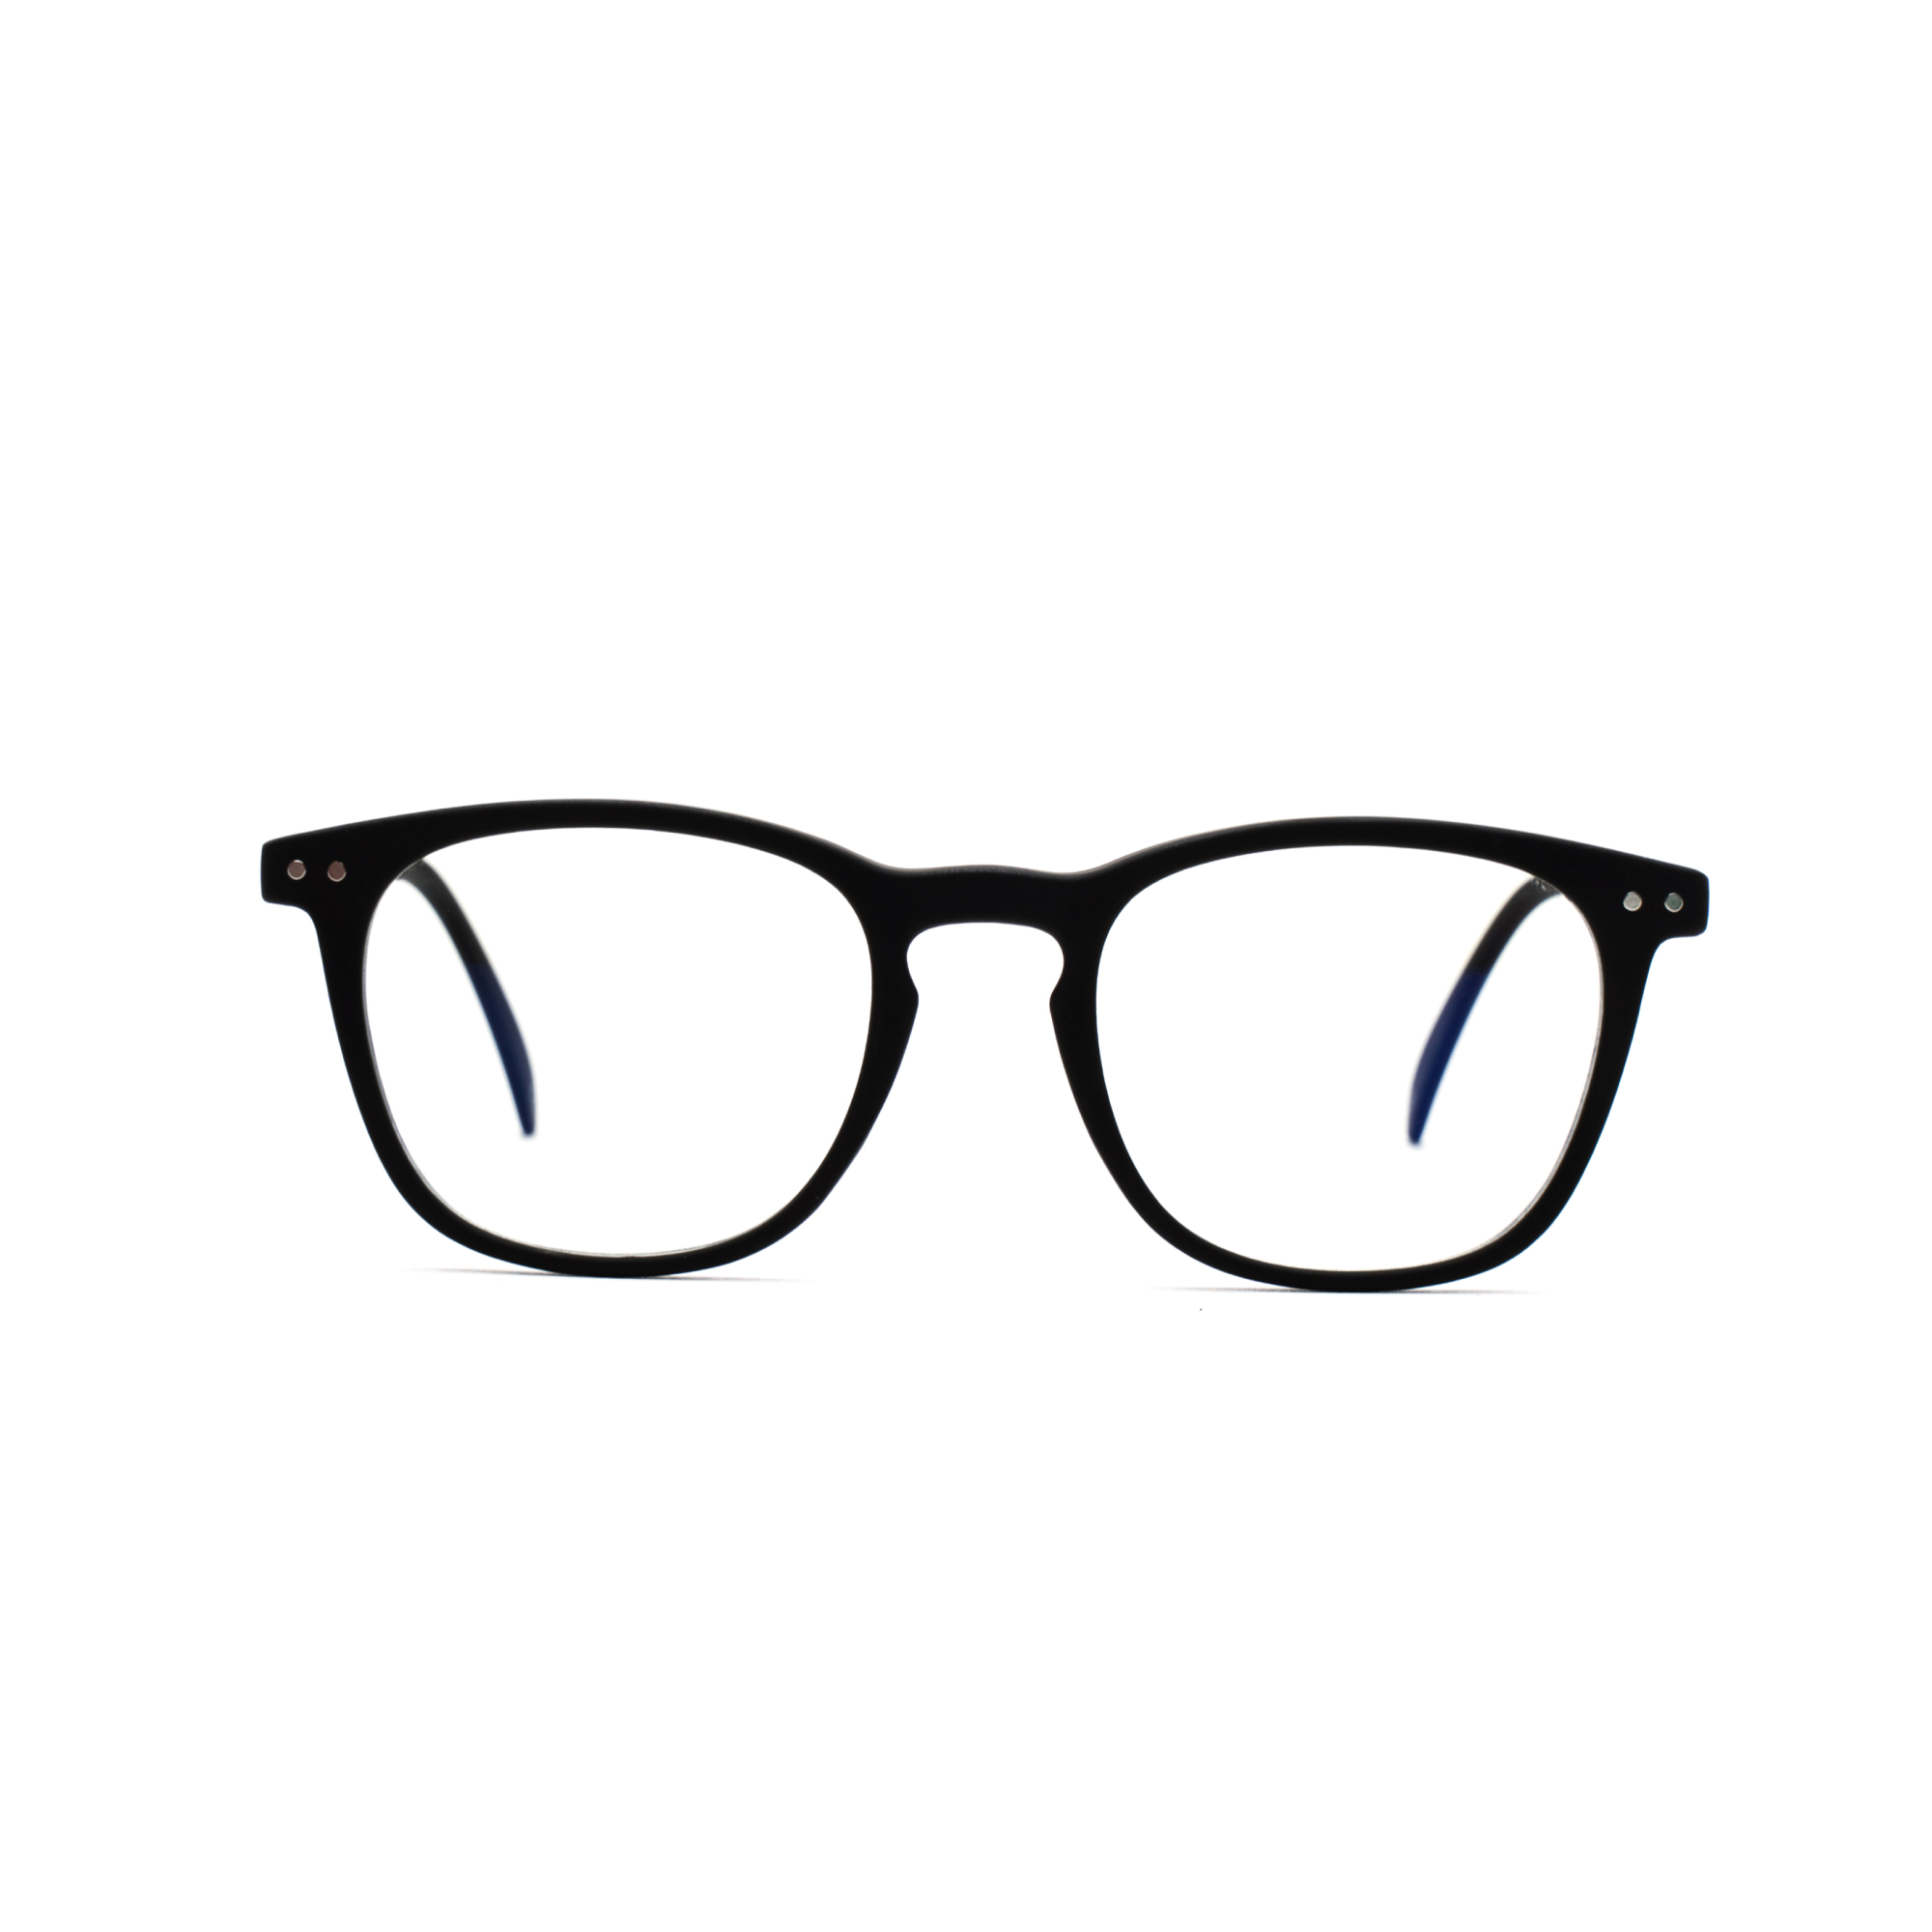 Men's reading glasses – William Ultimate m - Black